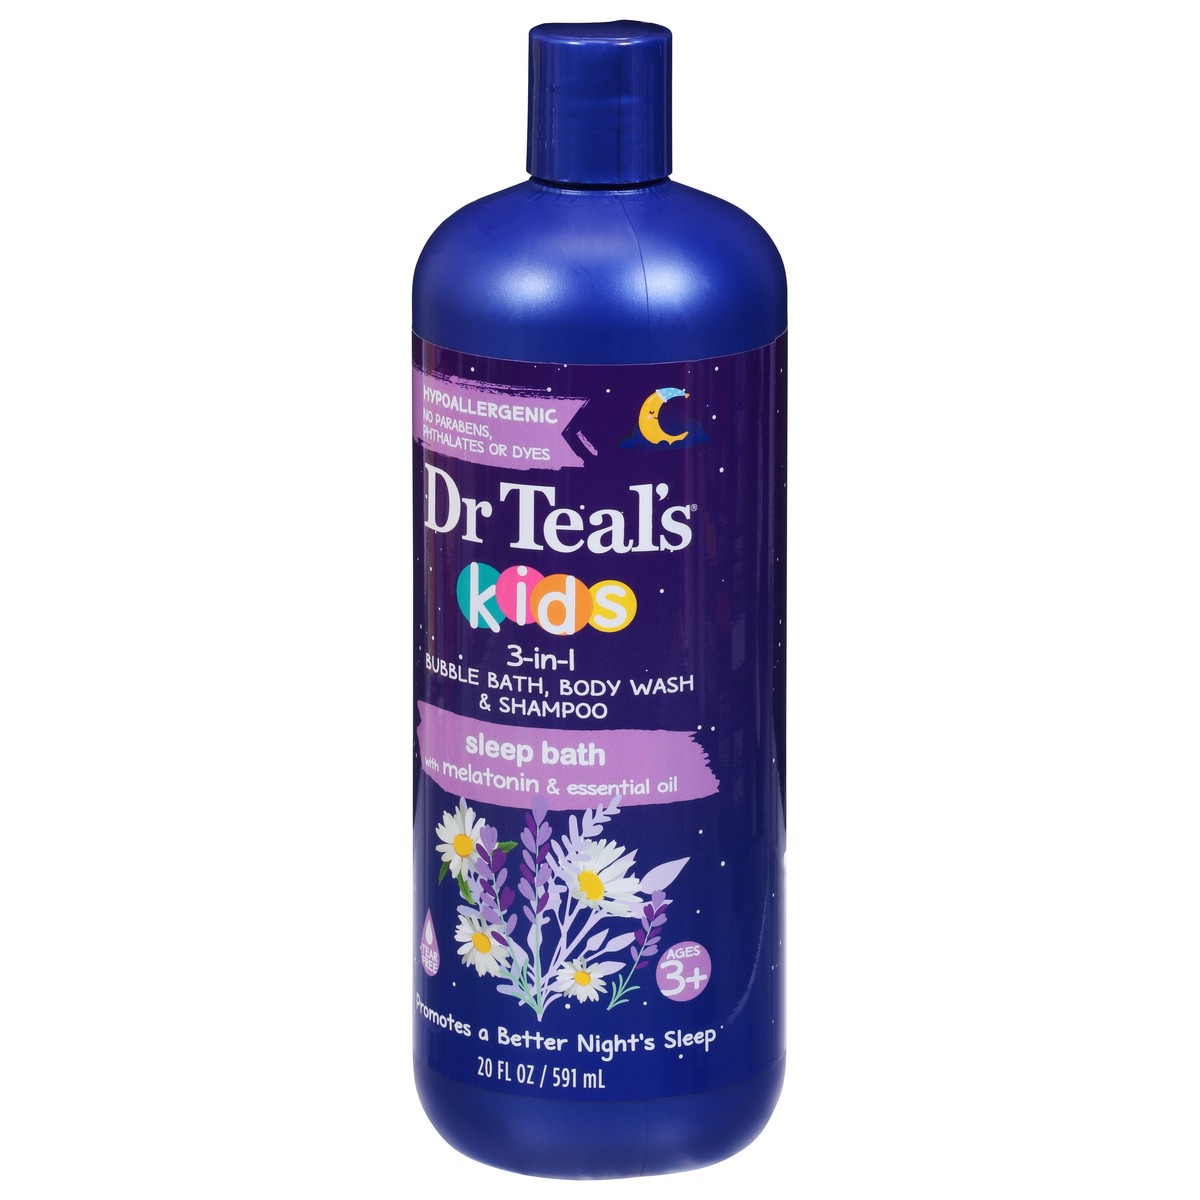 slide 3 of 9, Dr. Teal's Kids 3-in-1 Sleep Bath Bubble Bath, Body Wash & Shampoo 20 fl oz, 20 fl oz